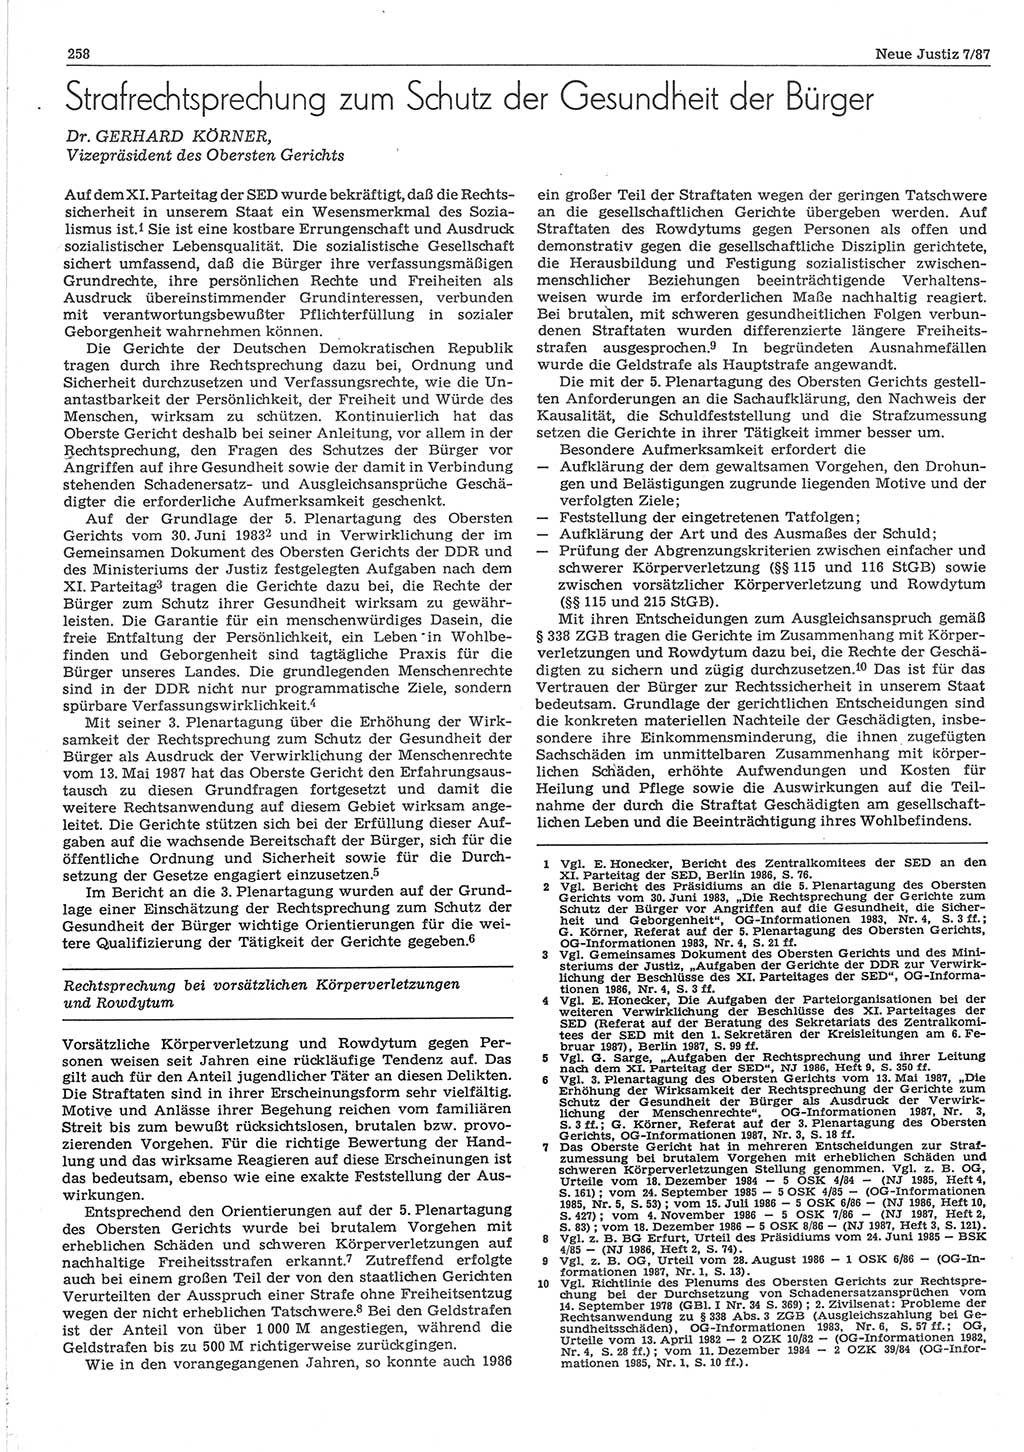 Neue Justiz (NJ), Zeitschrift für sozialistisches Recht und Gesetzlichkeit [Deutsche Demokratische Republik (DDR)], 41. Jahrgang 1987, Seite 258 (NJ DDR 1987, S. 258)